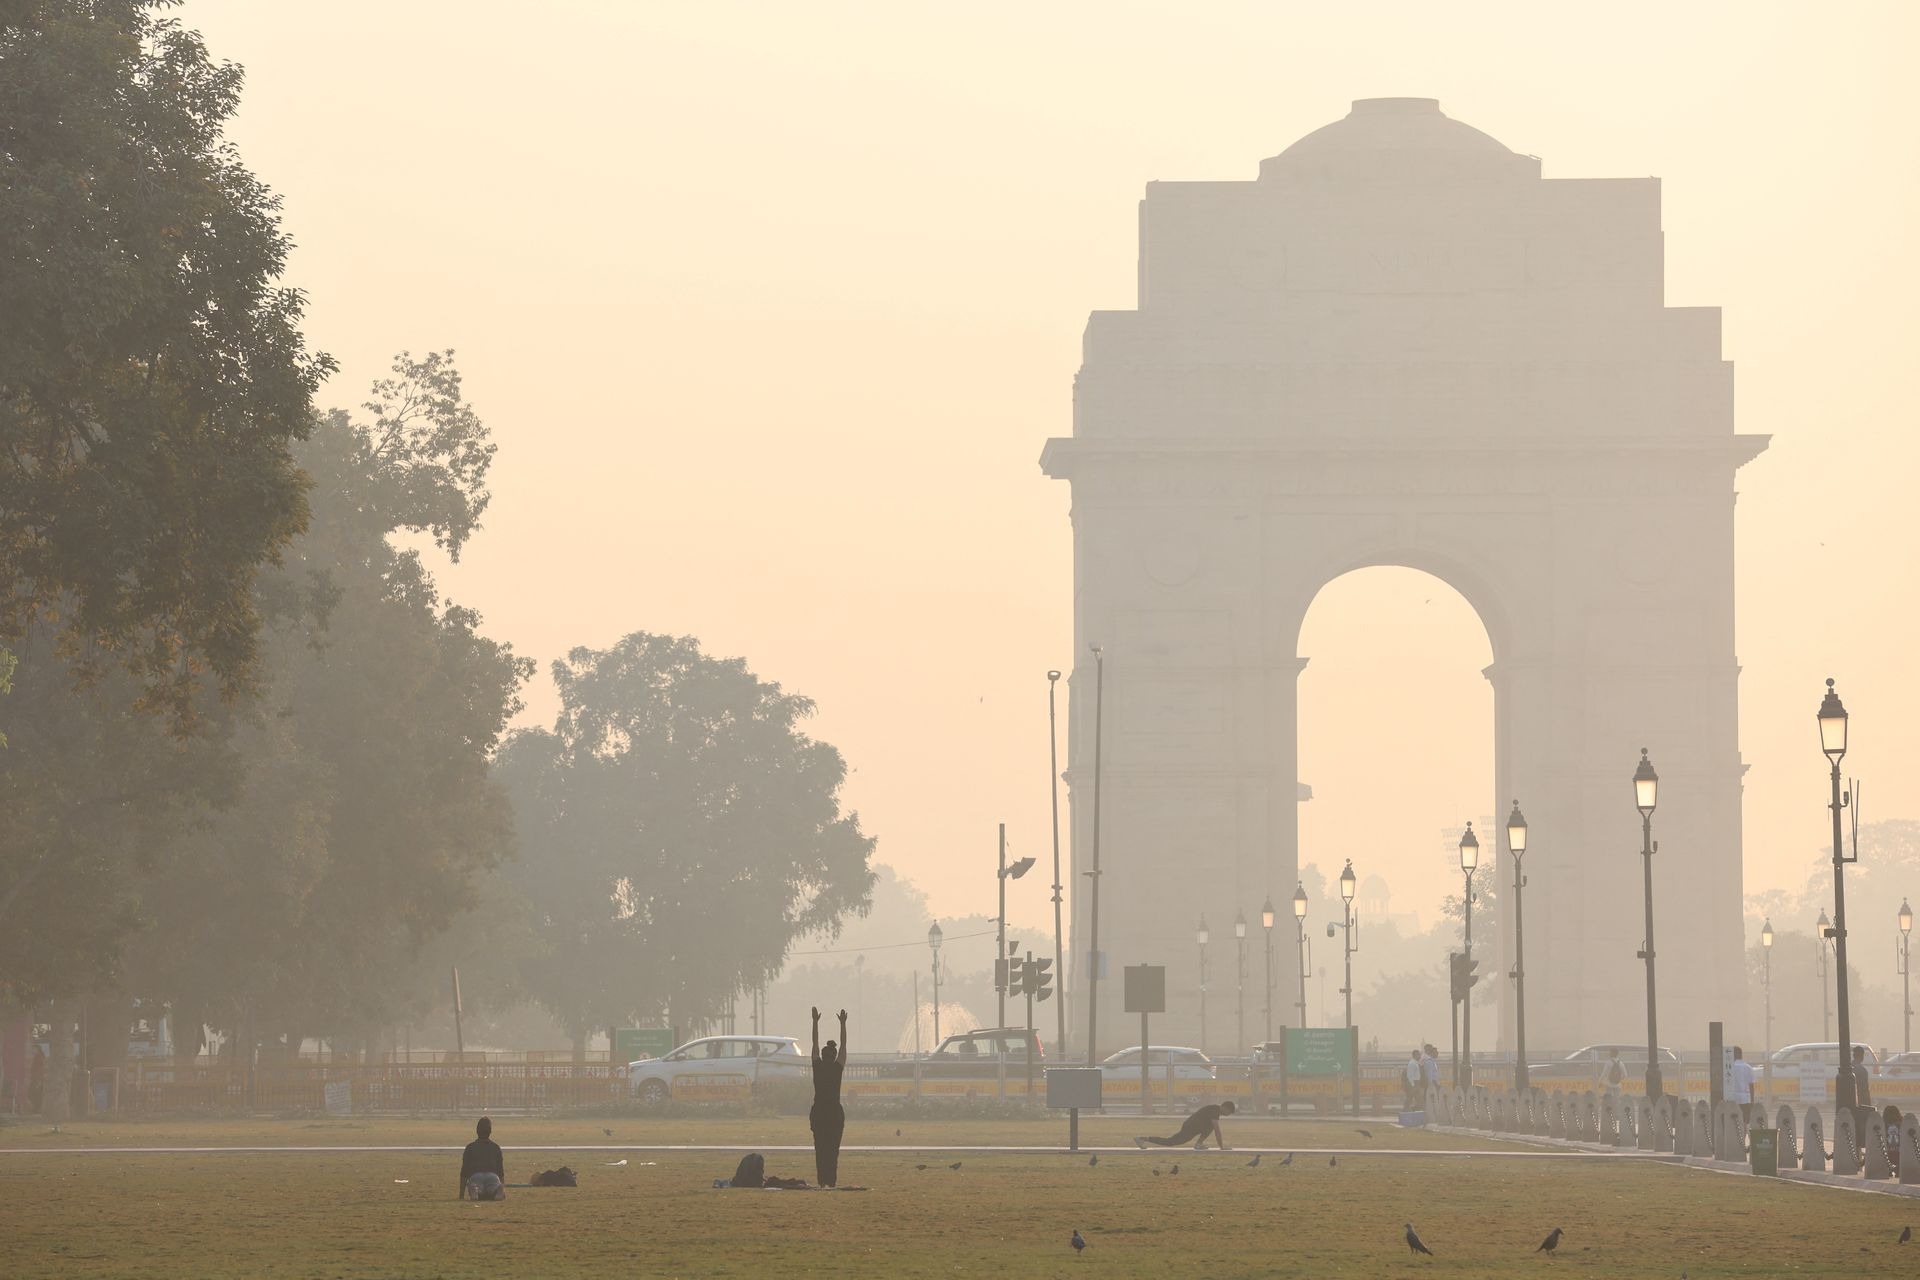 Siêu đô thị ô nhiễm nhất thế giới lại chìm trong sương mù, khói bụi  - Ảnh 2.